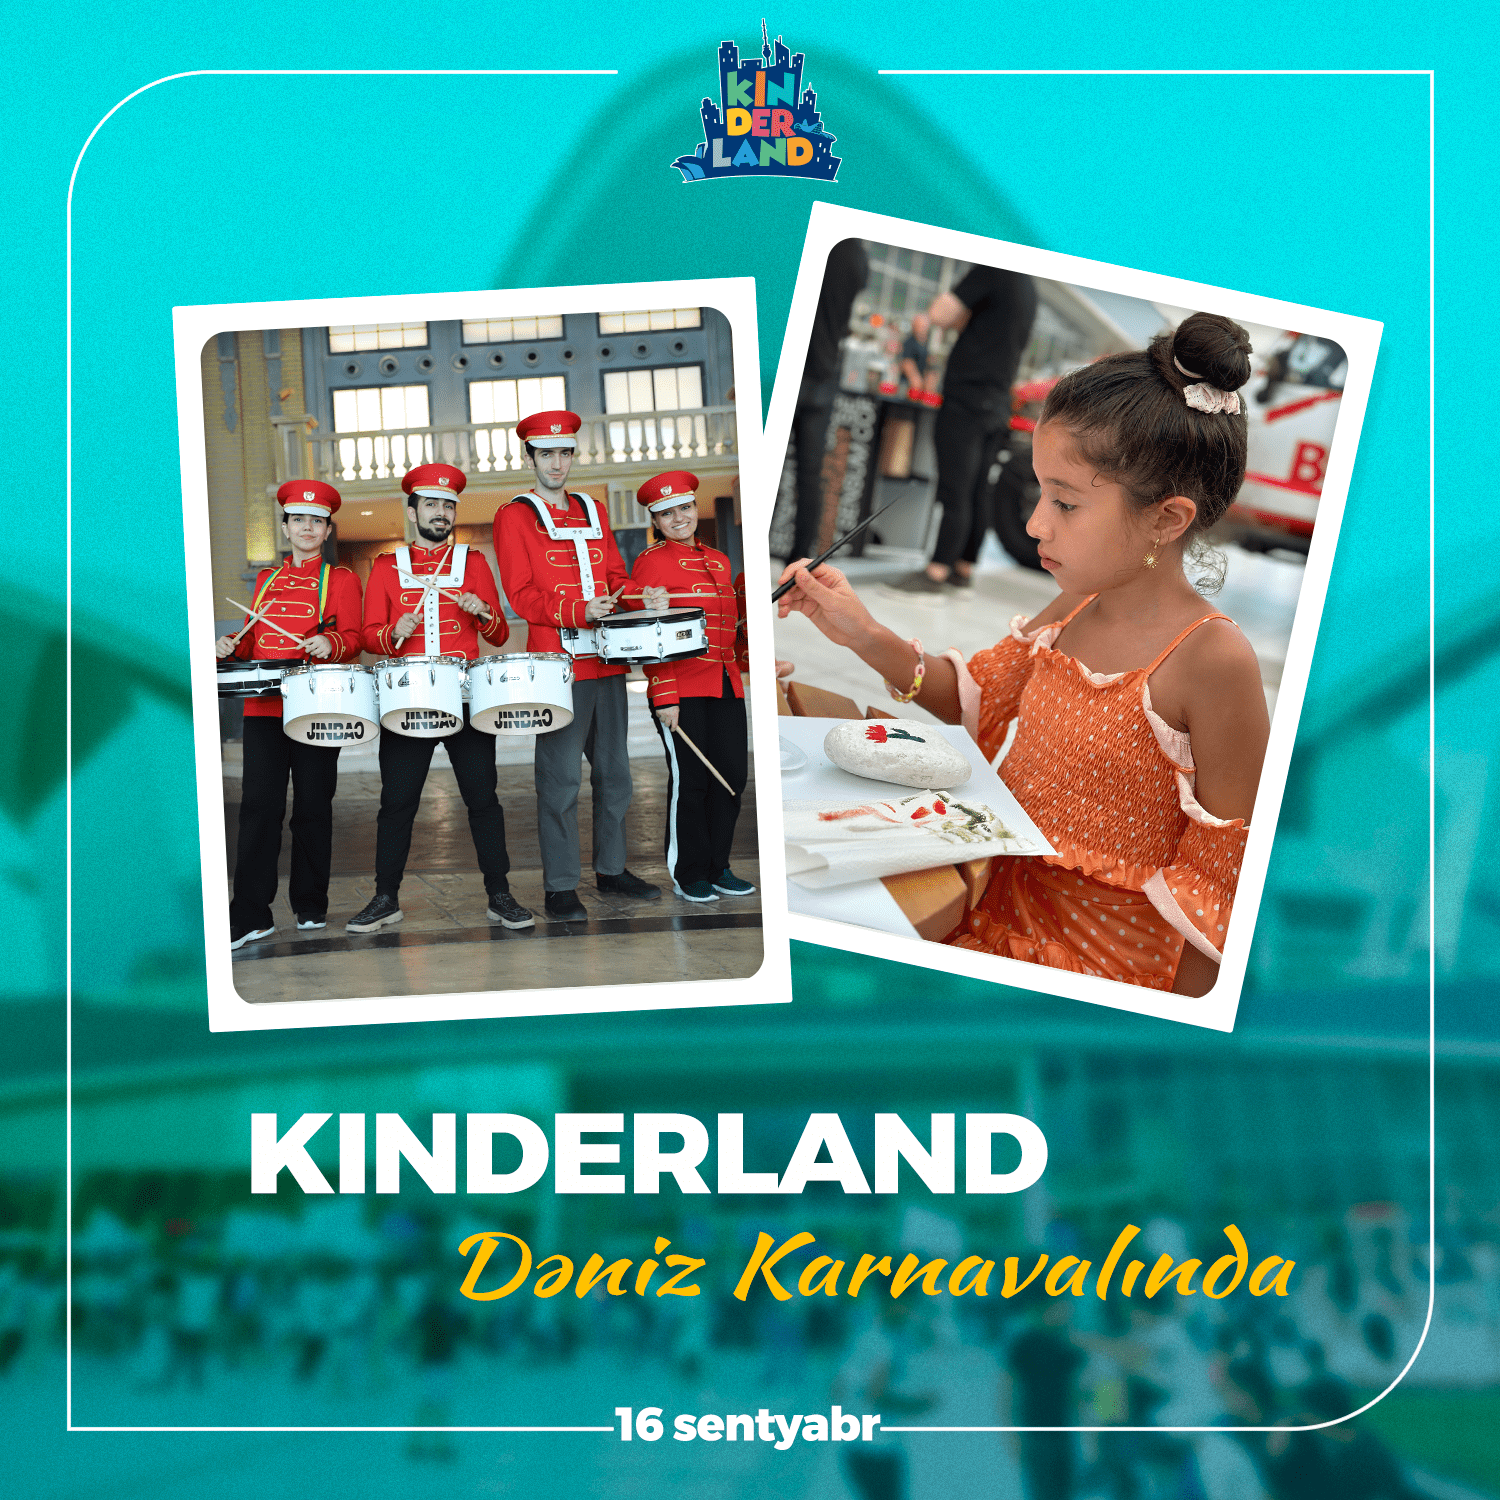 Kinderland в карнавале "Deniz"!